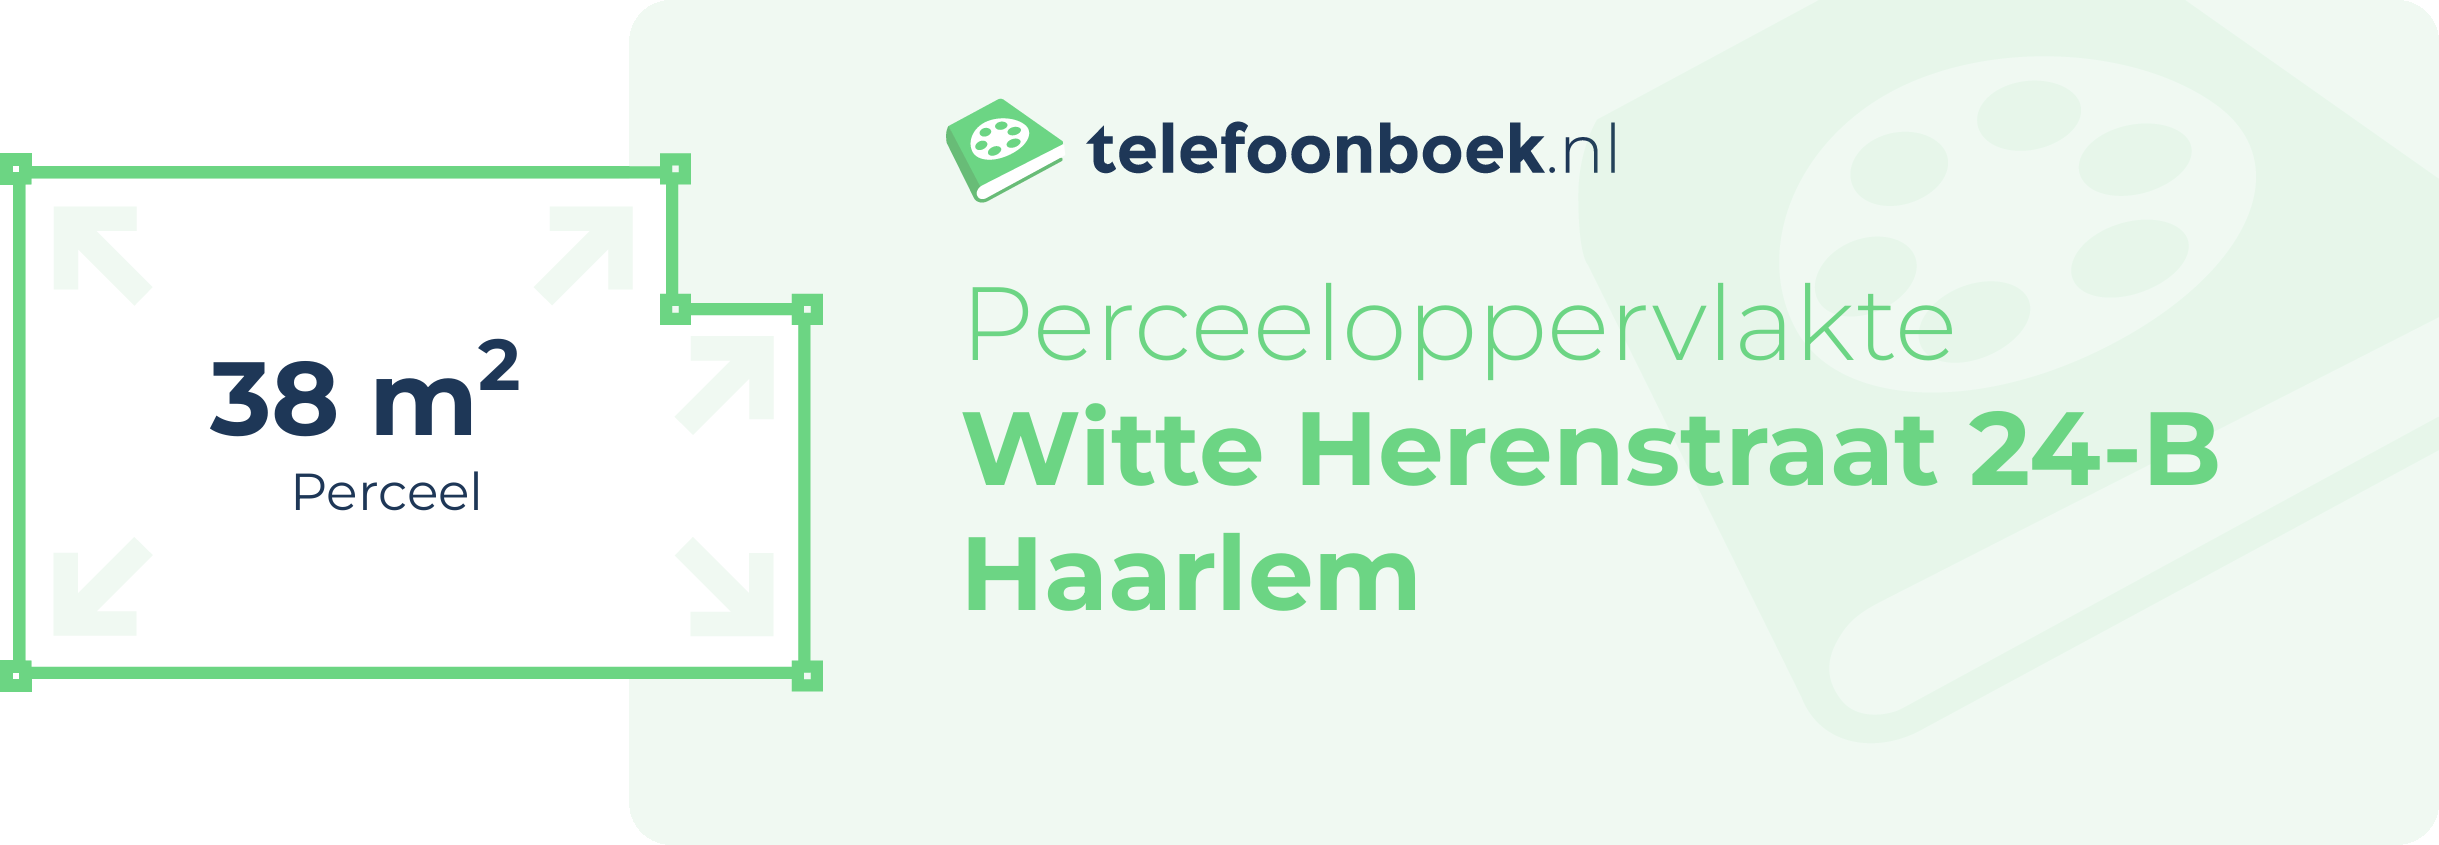 Perceeloppervlakte Witte Herenstraat 24-B Haarlem